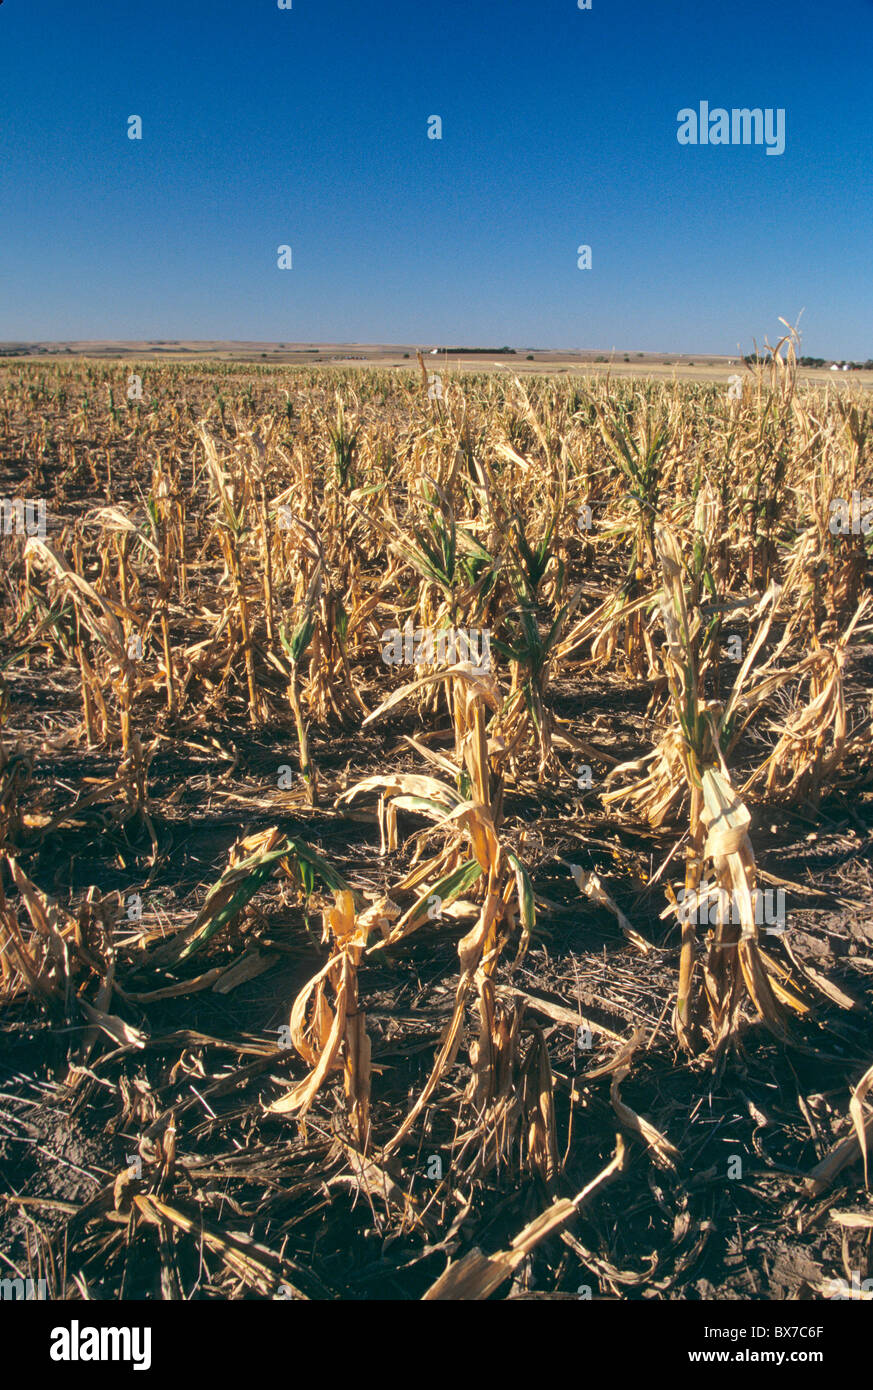 Un mancato raccolto a causa della siccità e grandine, Foto Stock